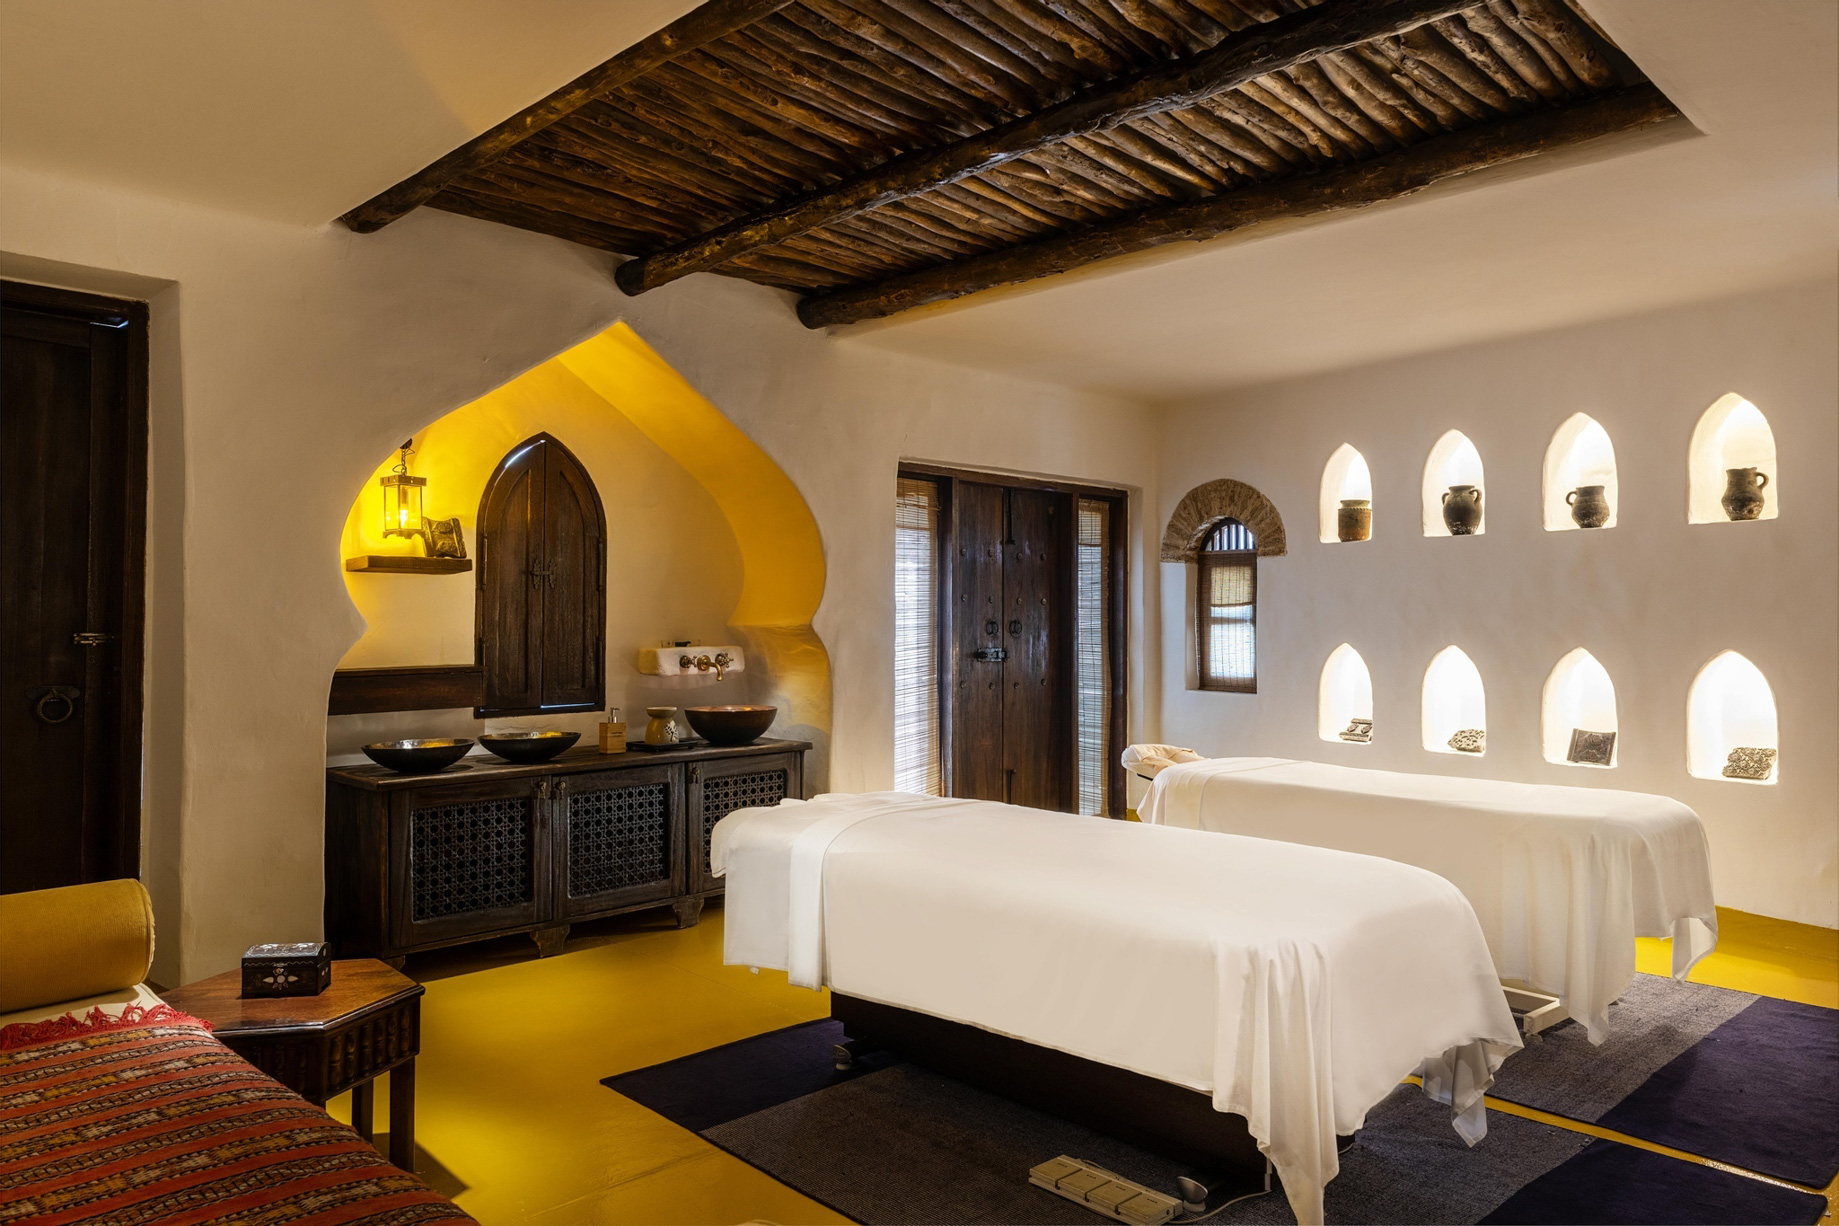 Sharq Village & Spa, A Ritz-Carlton Hotel – Doha, Qatar – Spa Treatment Room